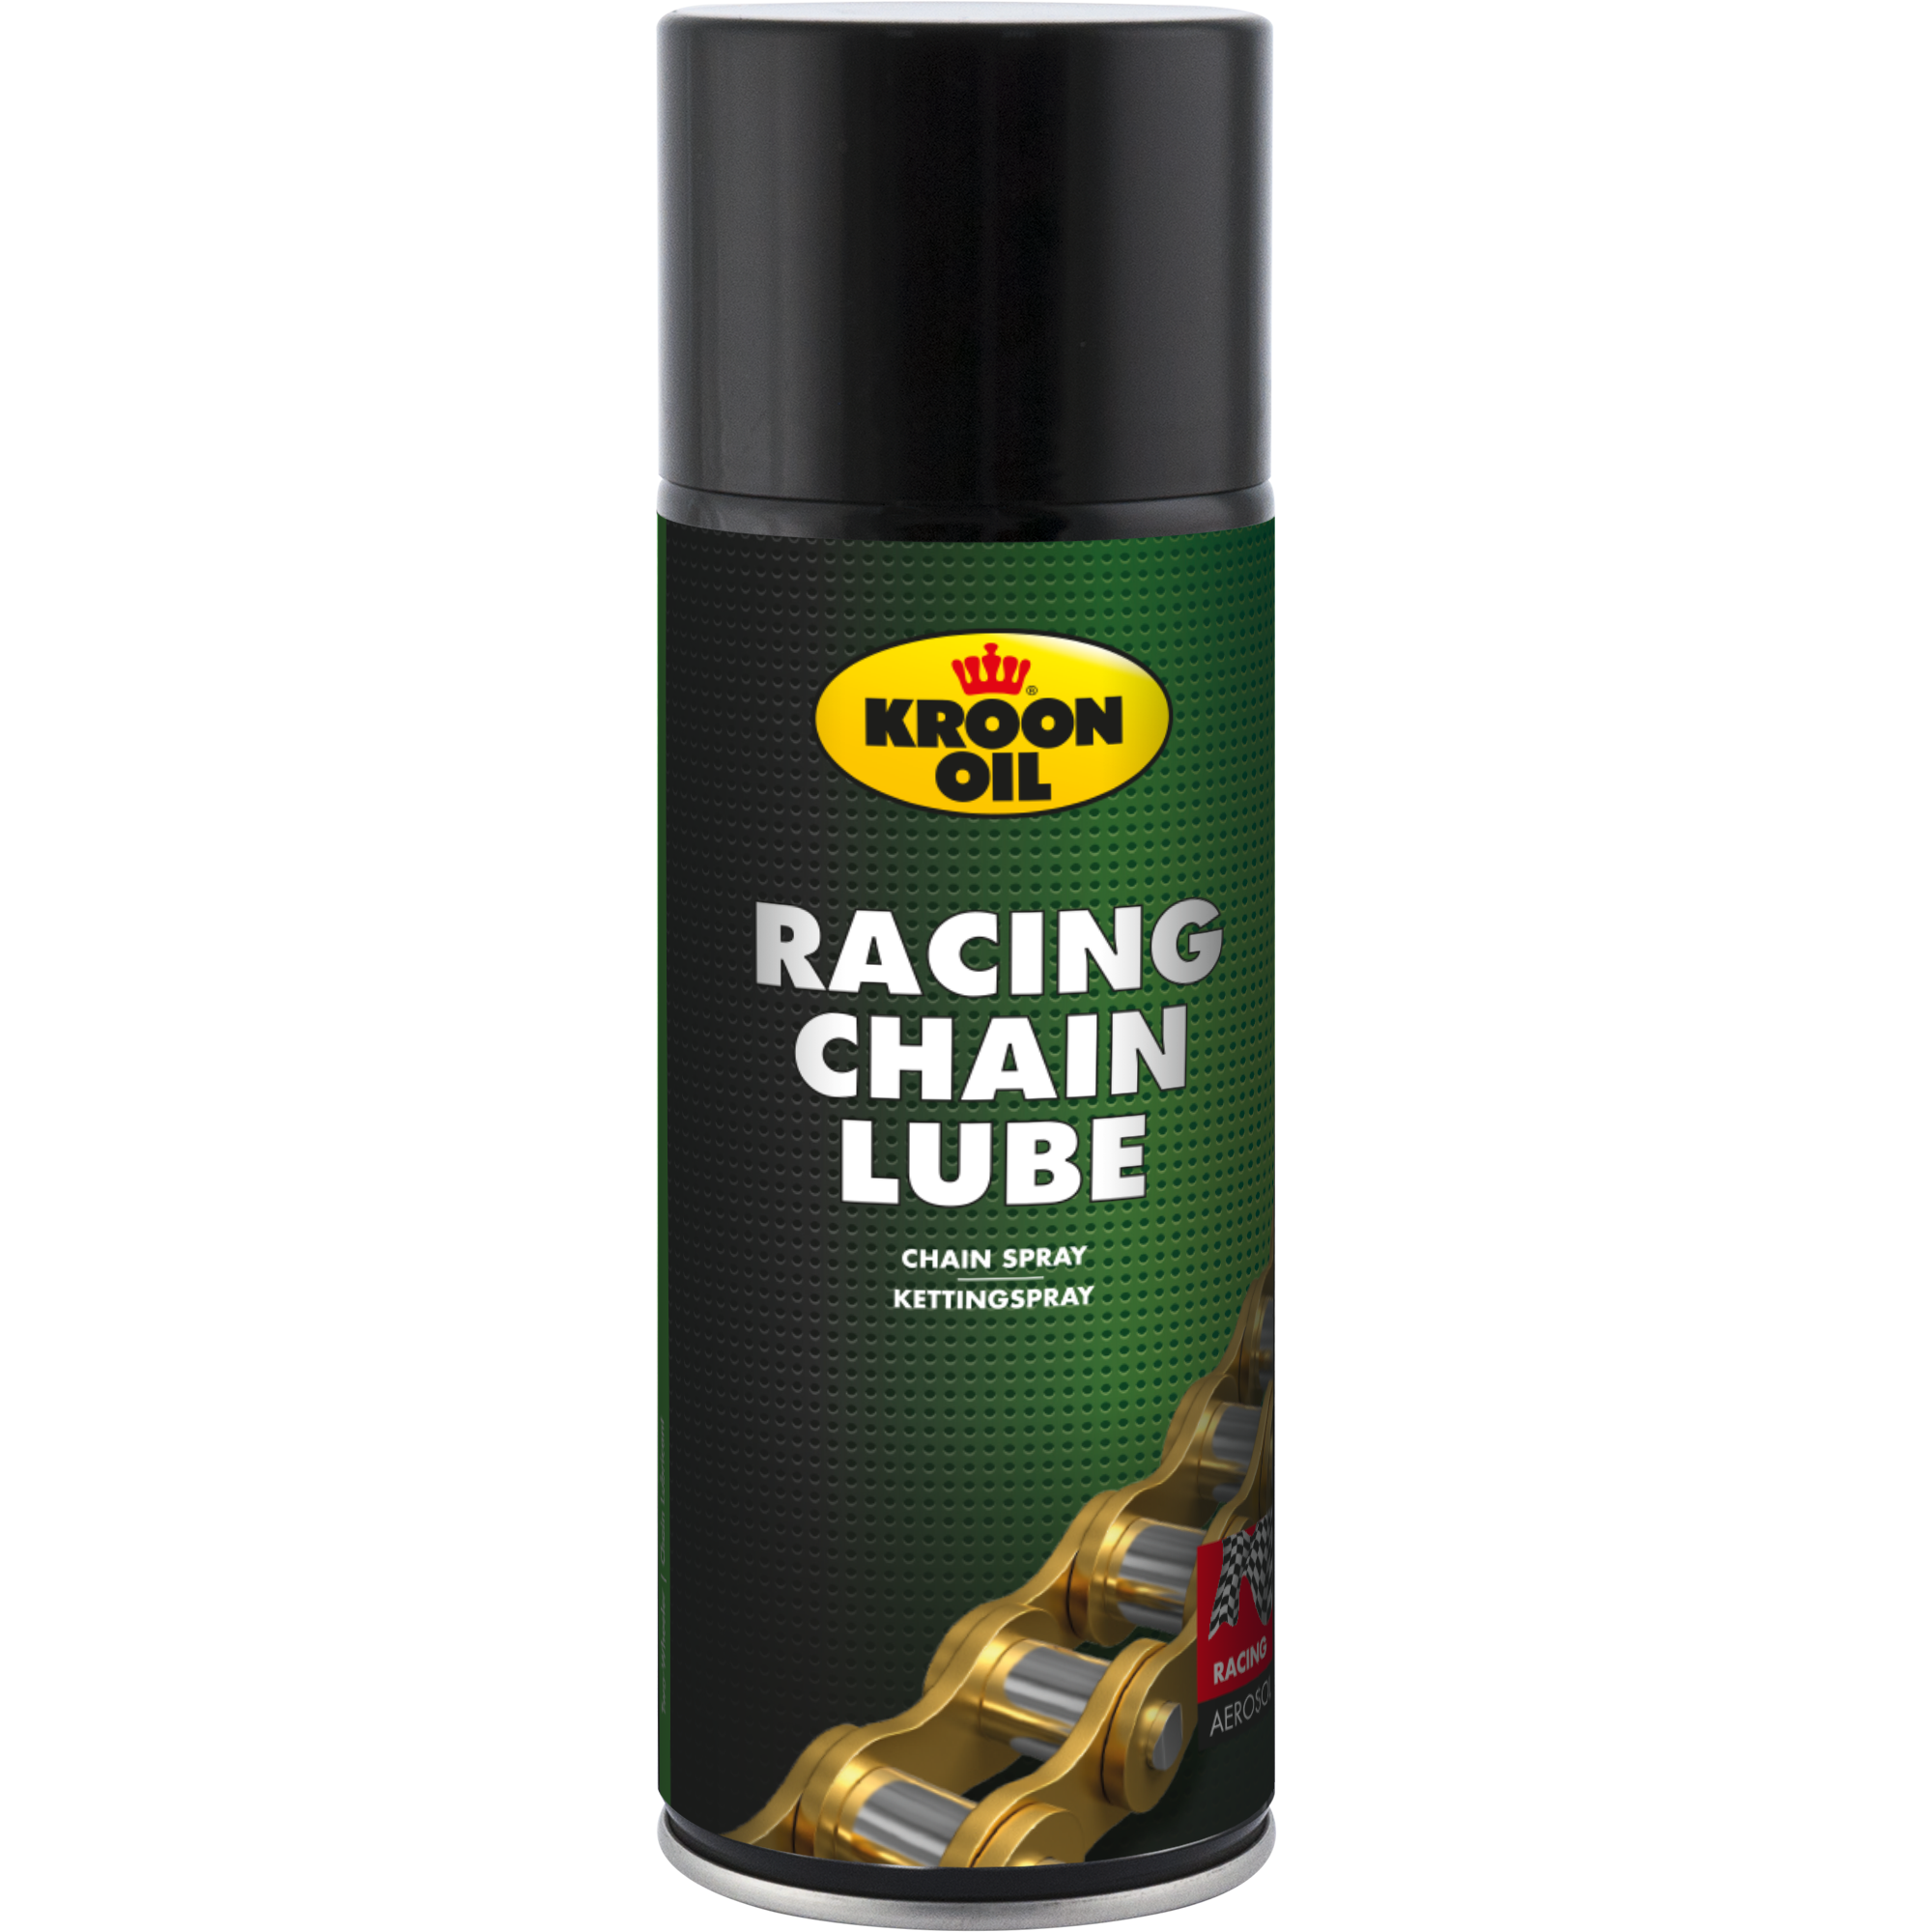 38011-400ML Racing Chainlube is een amberkleurig synthetisch smeermiddel dat speciaal ontwikkeld is voor de smering van kettingen van motorfietsen en bromfietsen.